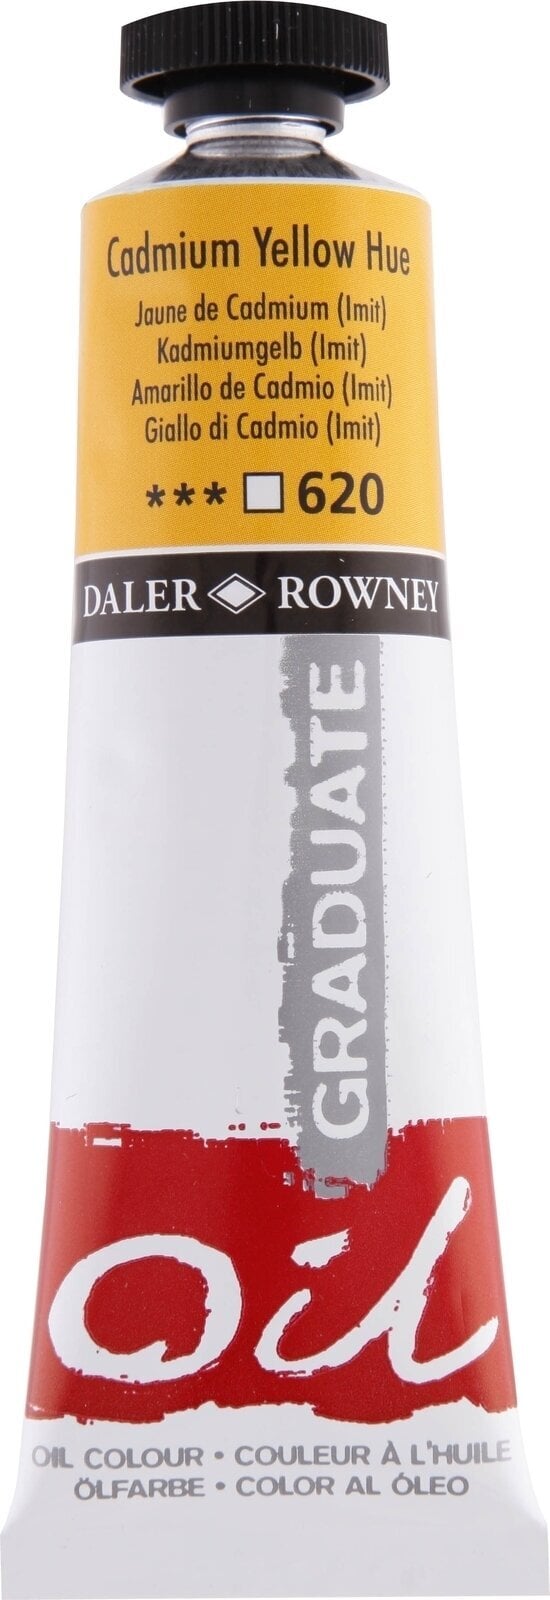 Aceite de colores Daler Rowney Graduate Oil Paint Cadmium Yellow Hue 38 ml 1 pc